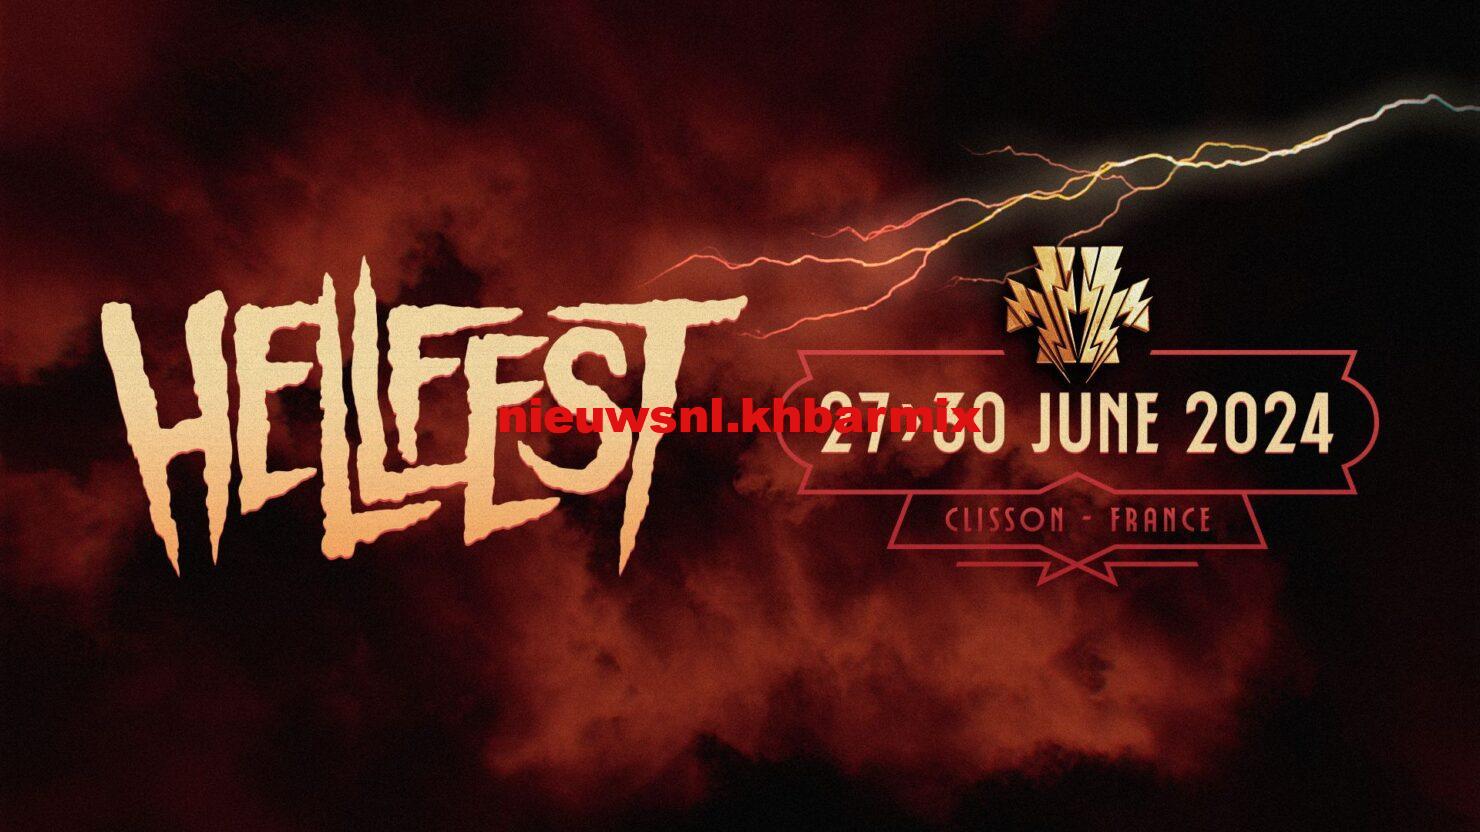 hellfest 2024 tickets price